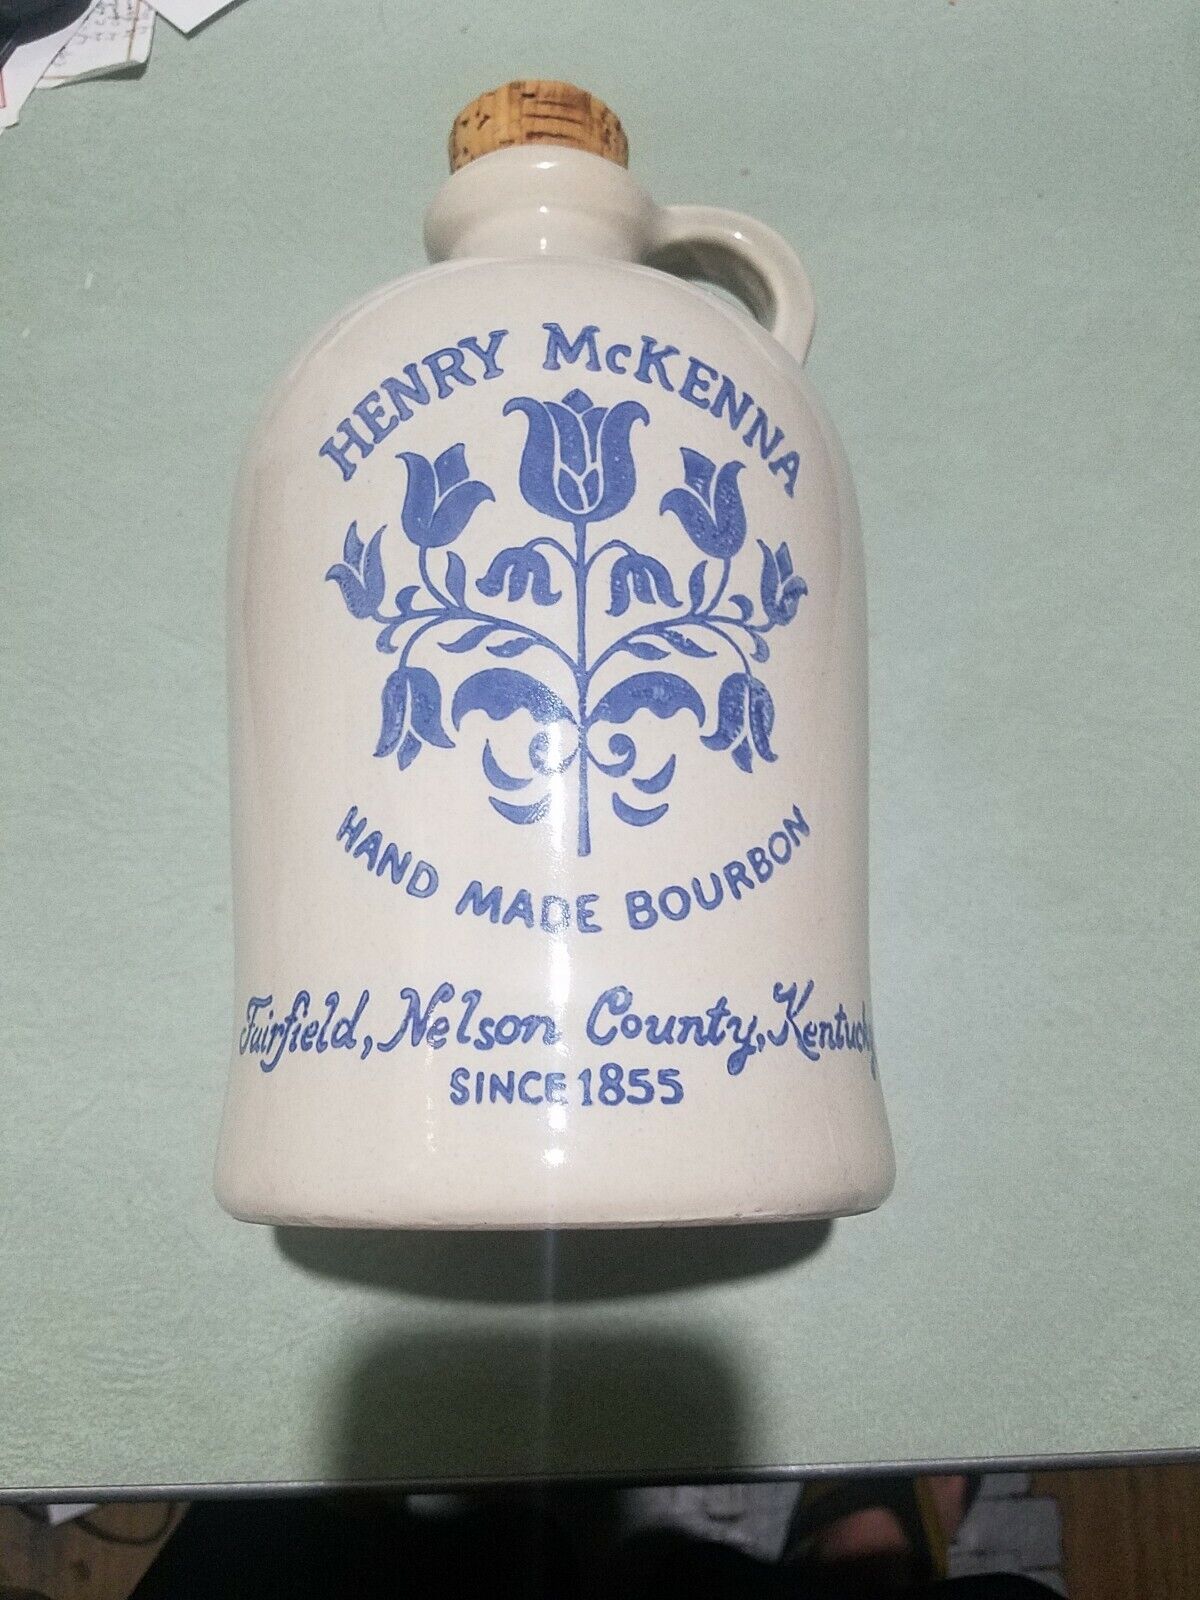 EXCELLENT CONDITION 1964 HENRY McKENNA HAND MADE BOURBON 1/2 Gallon Jug w/ CORK